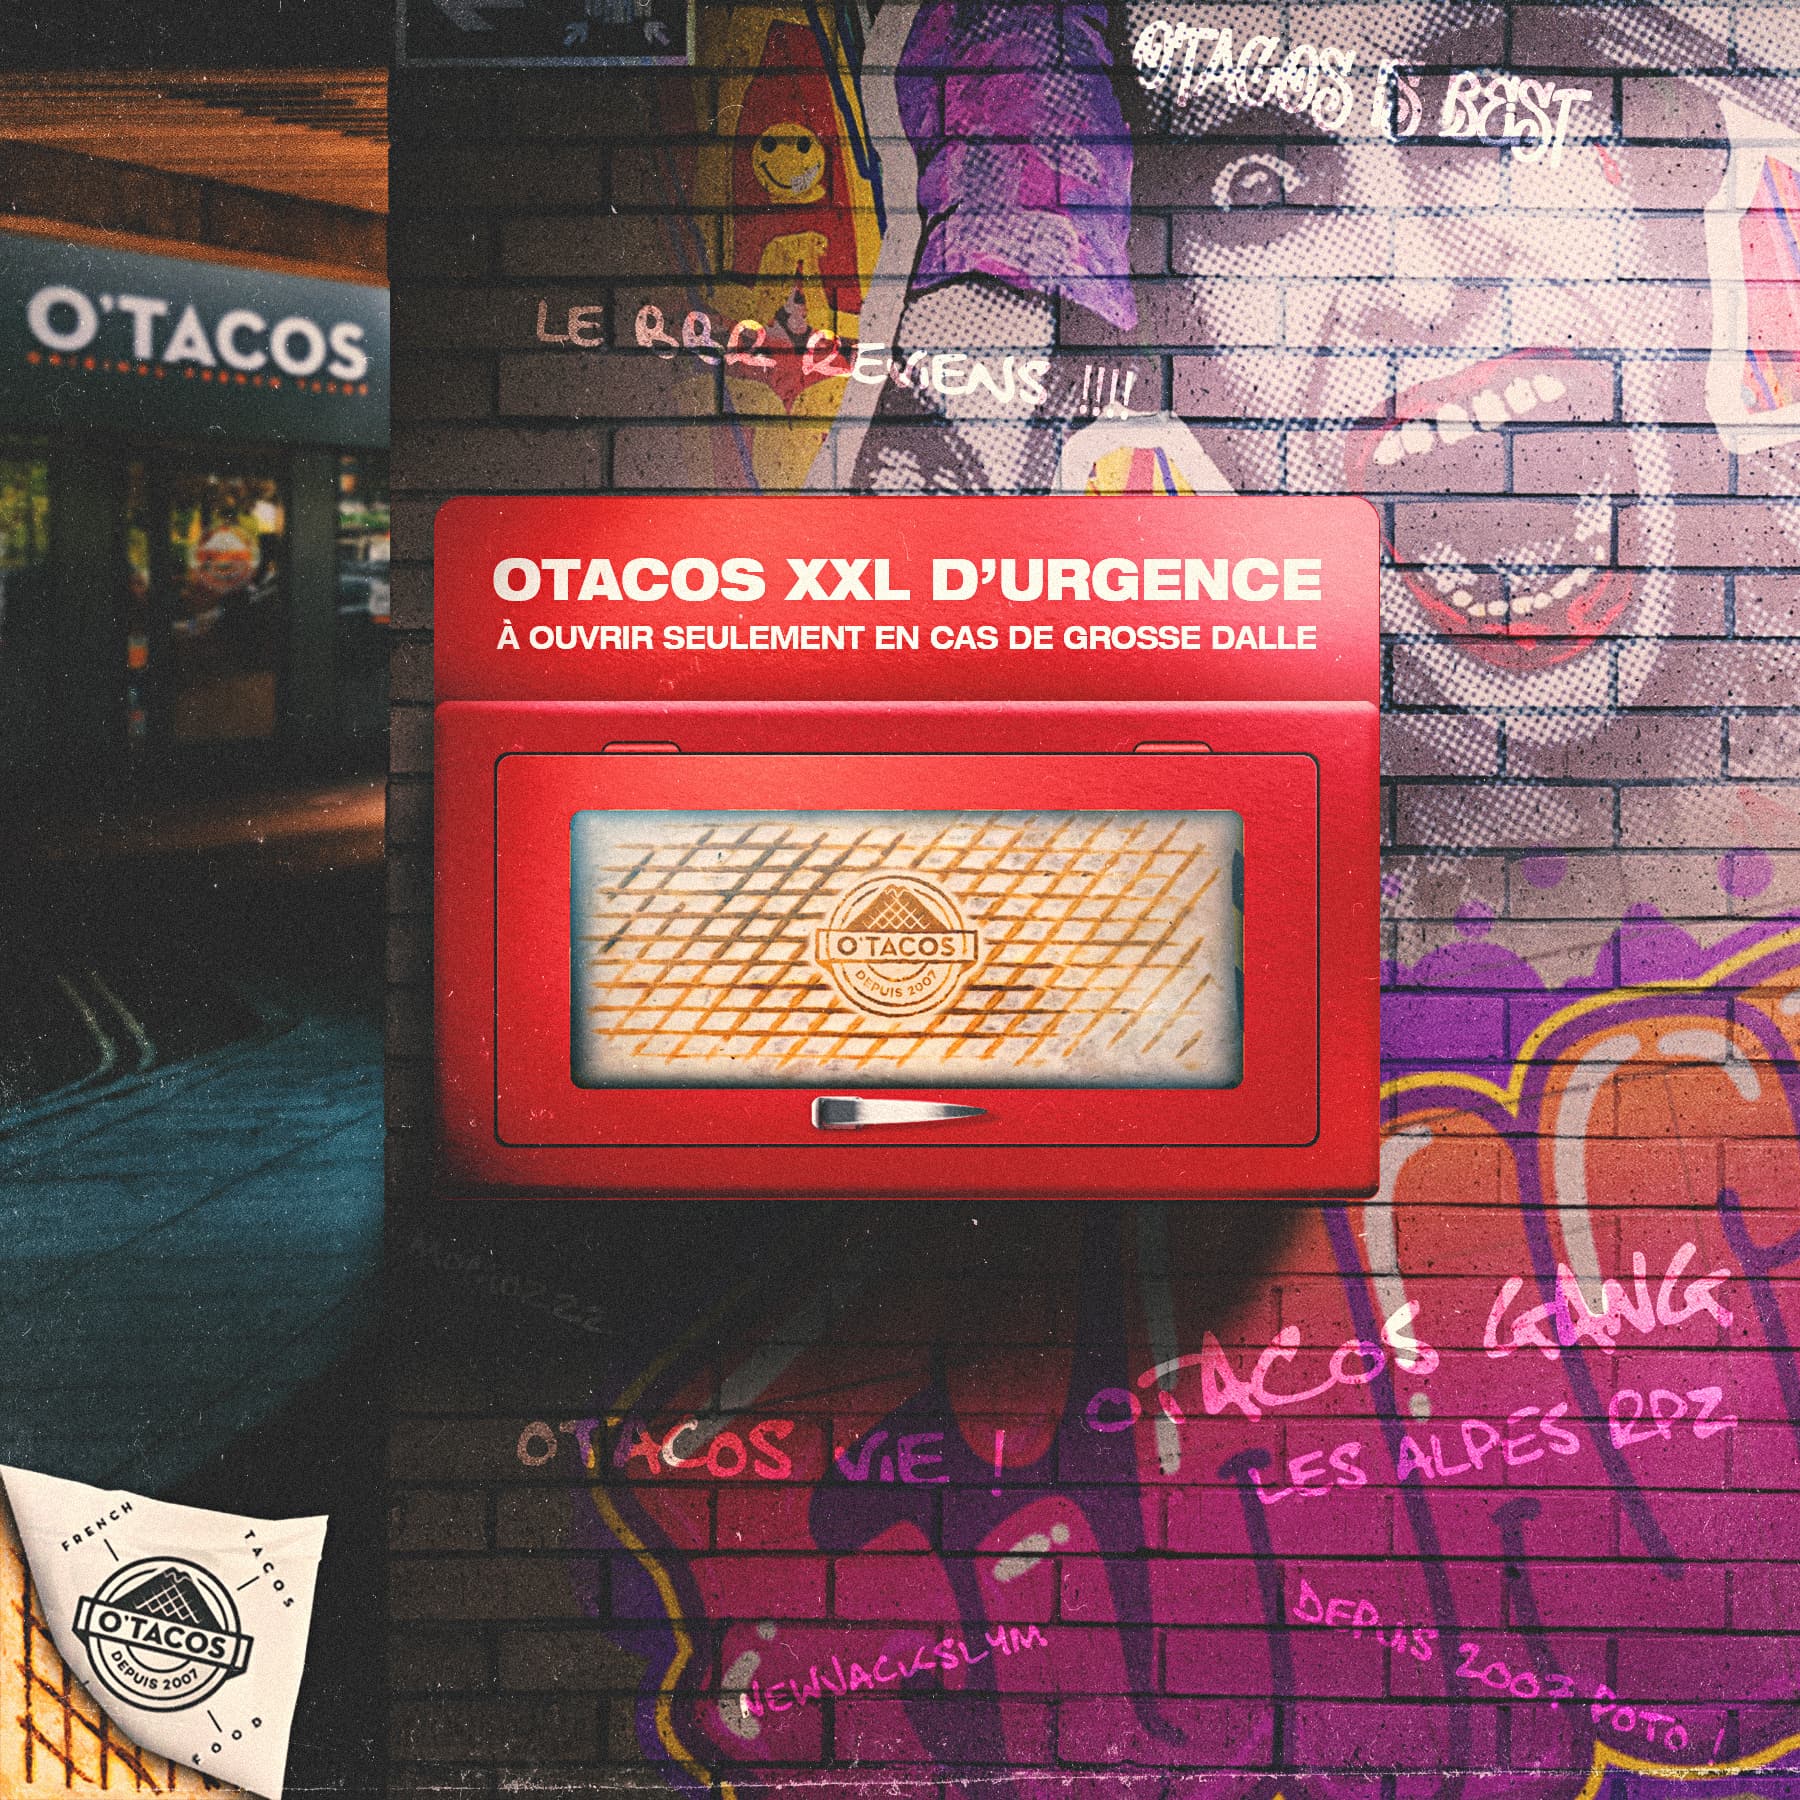 Visuel à destination des réseaux sociaux pour la marque O'Tacos